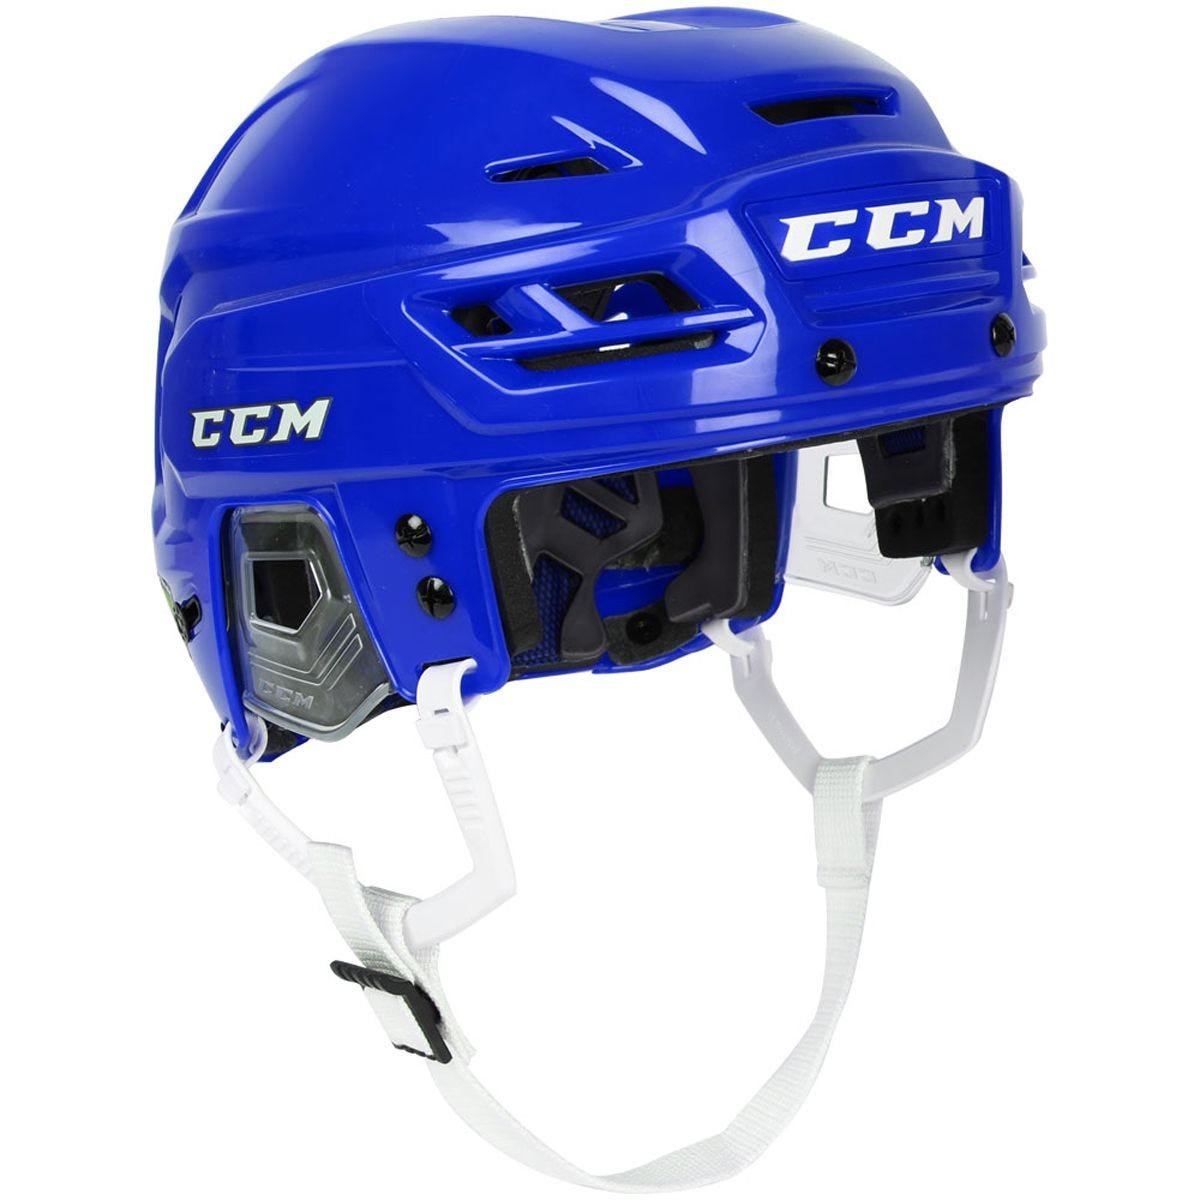 Ccm 04s хоккейный шлем